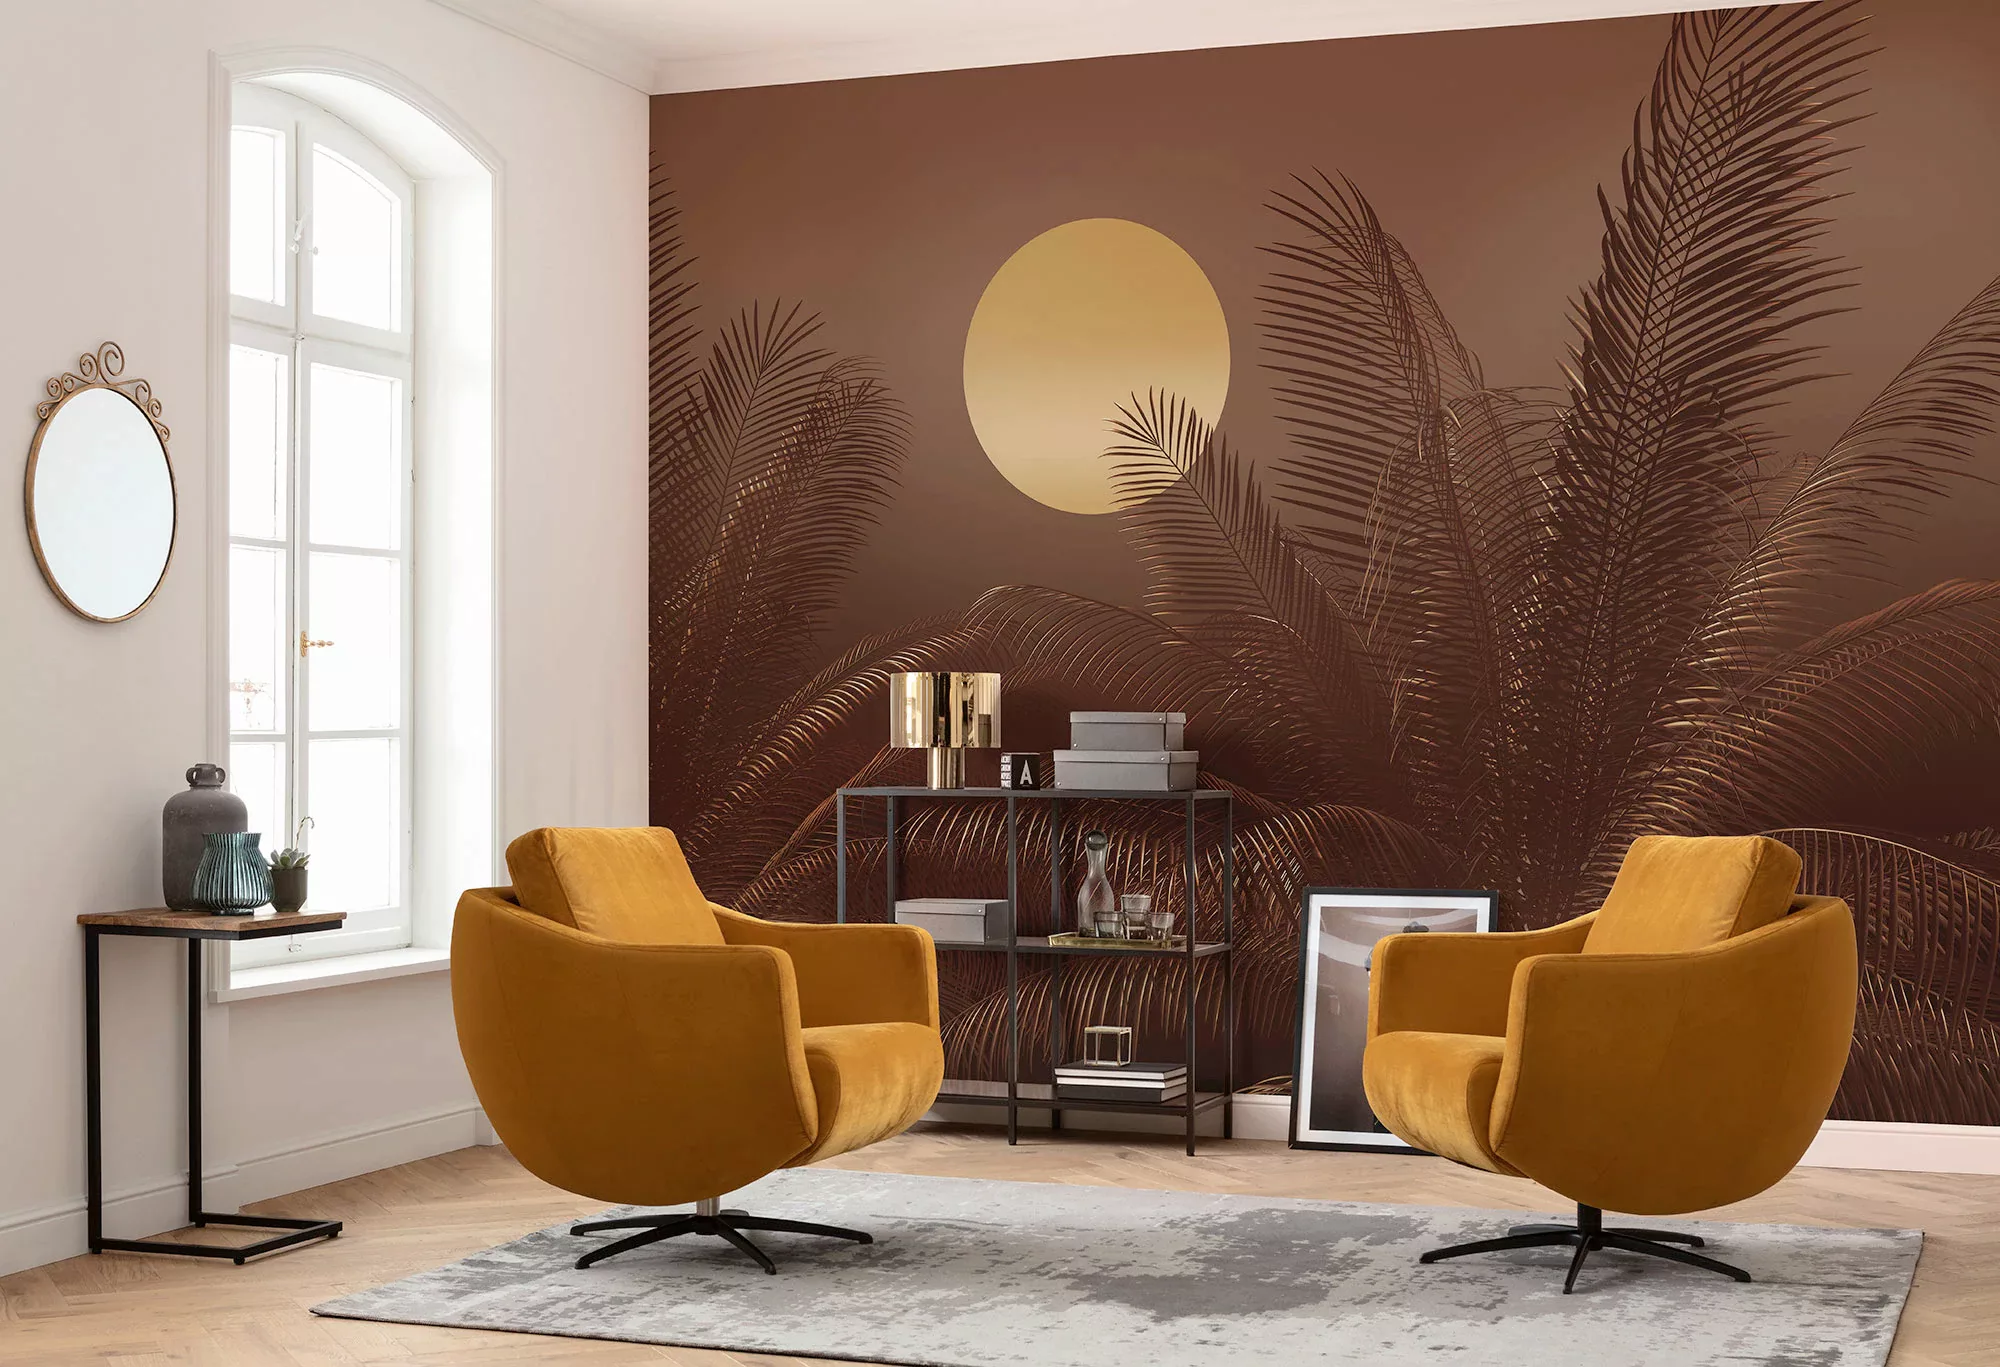 KOMAR Vlies Fototapete - Manoa - Größe 350 x 250 cm mehrfarbig günstig online kaufen